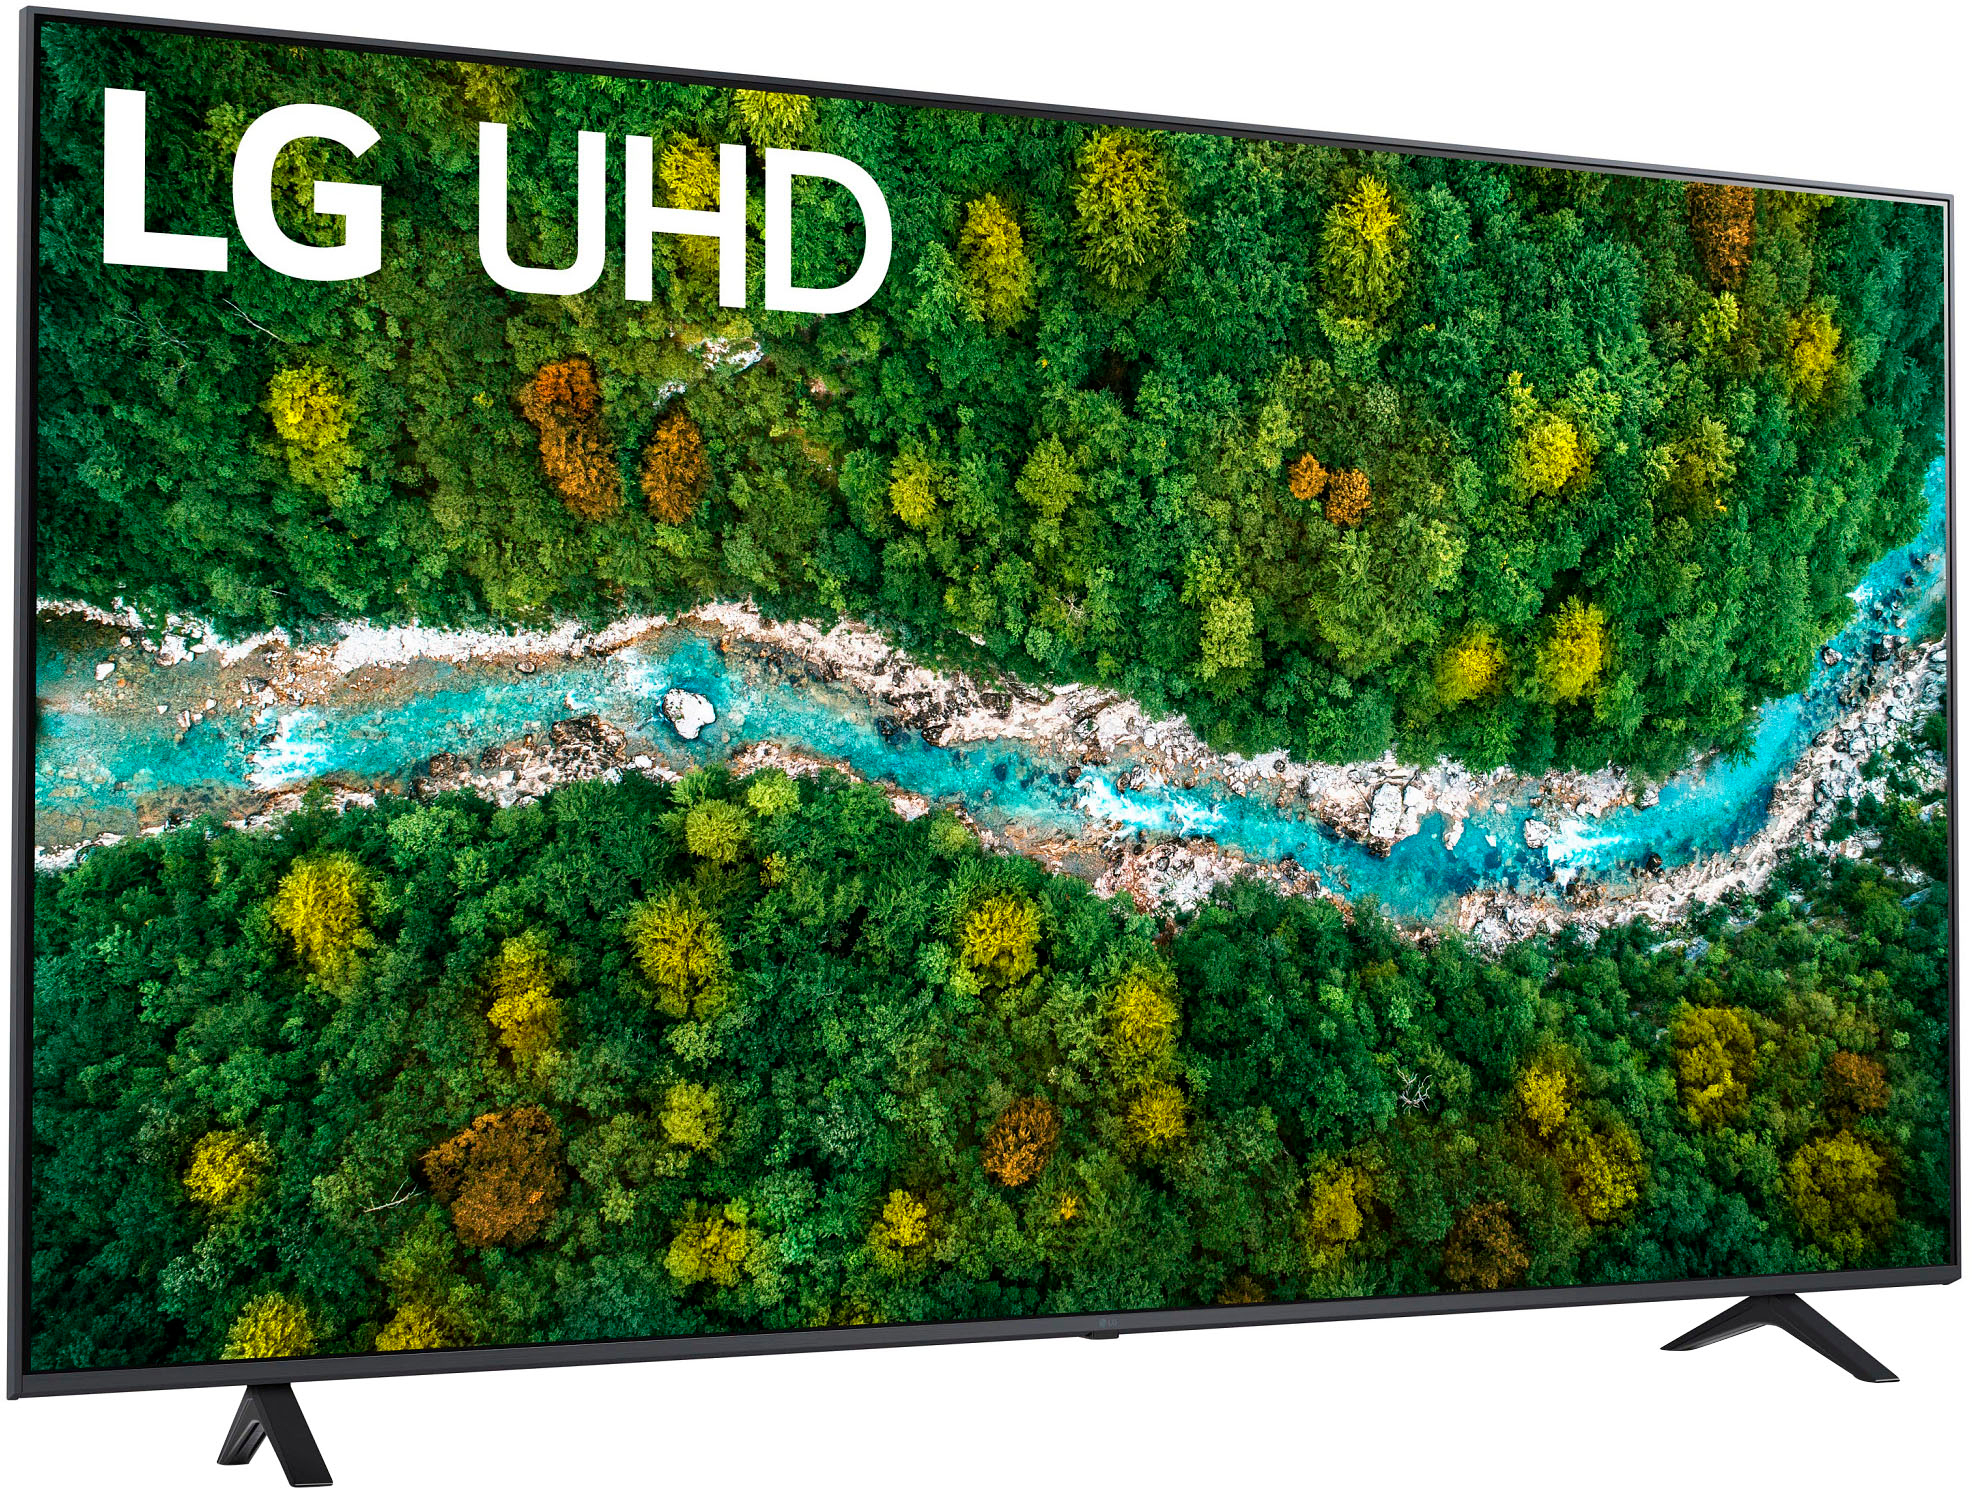 LG 75” UP7300PUC LED 4K TV $569.99 + Free Shipping